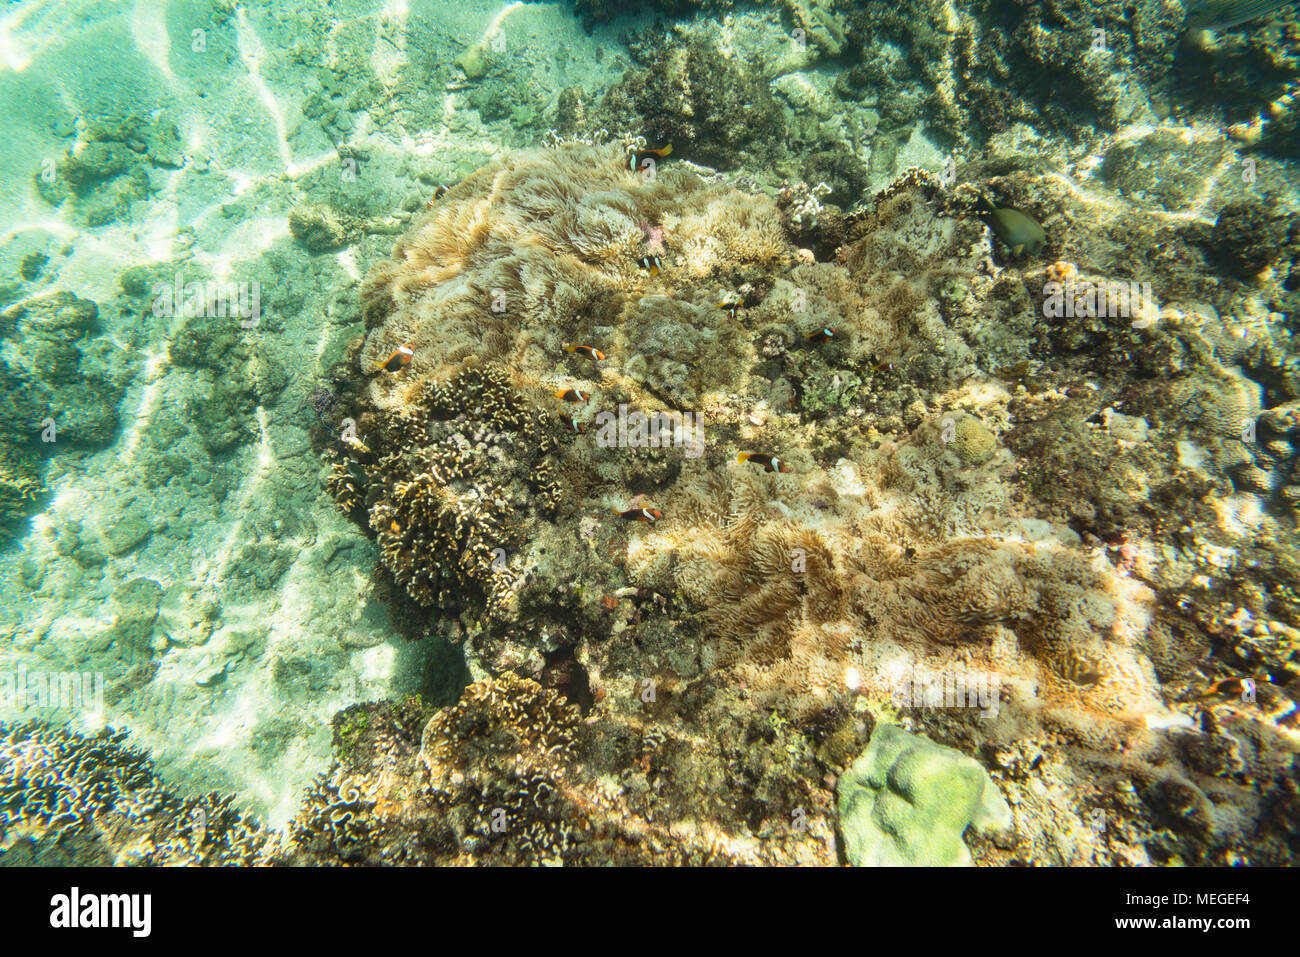 Pesce pagliaccio e anemone marittimo Foto Stock